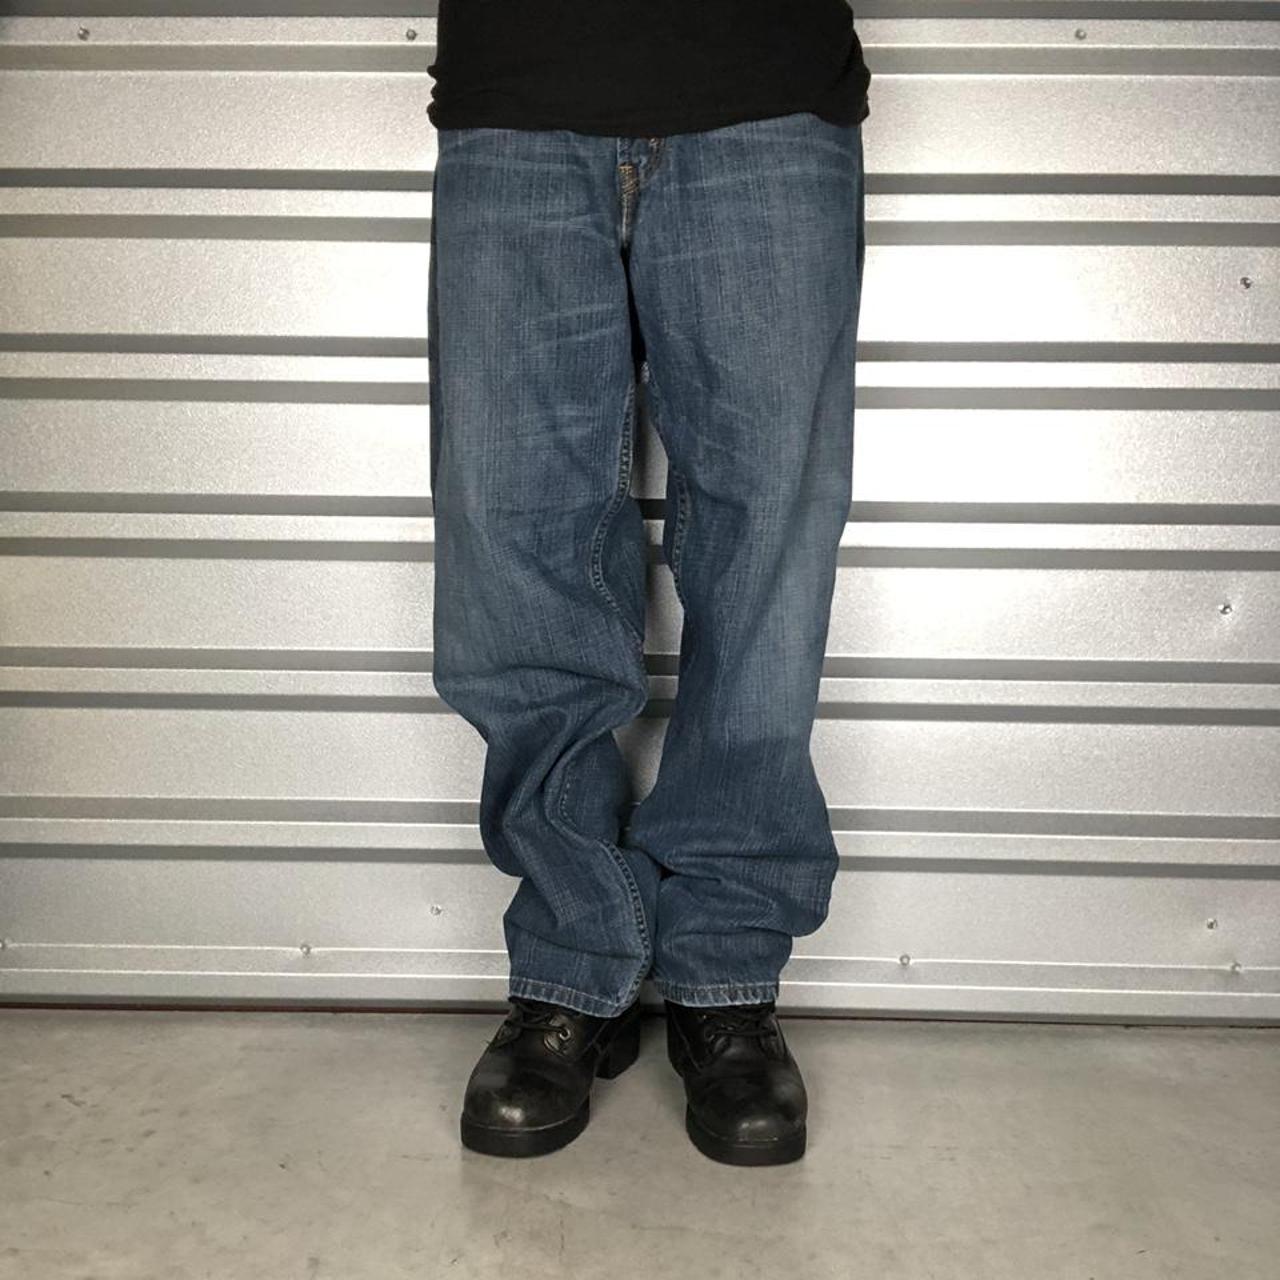 Levi’s 550 Dark Washed Denim Jeans Mens Size 38 x 32... - Depop